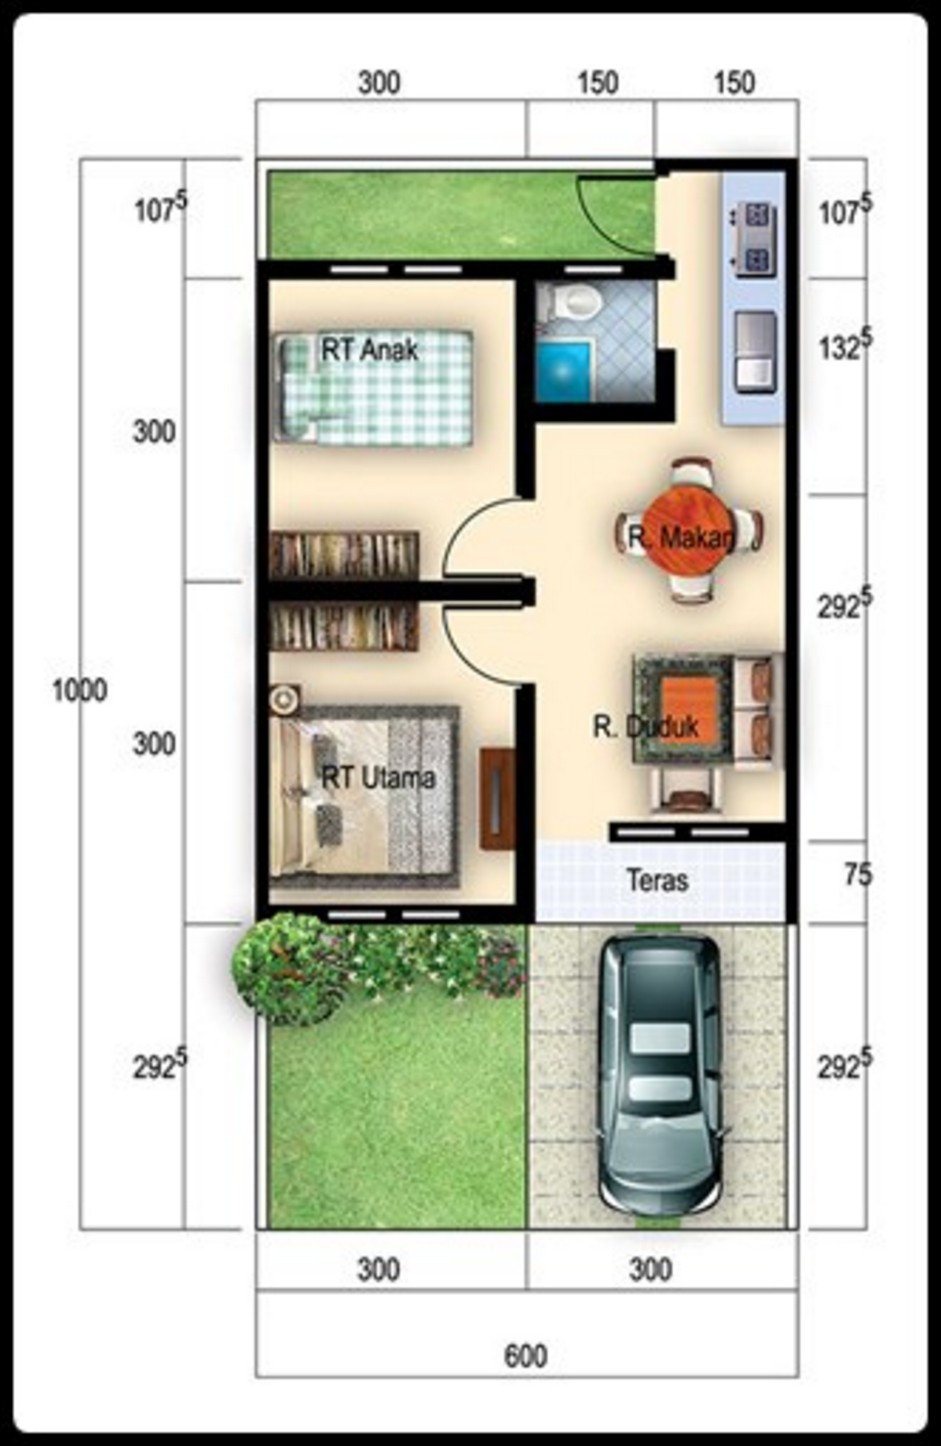 63 Desain Rumah Minimalis Type 27 Area Desain Rumah